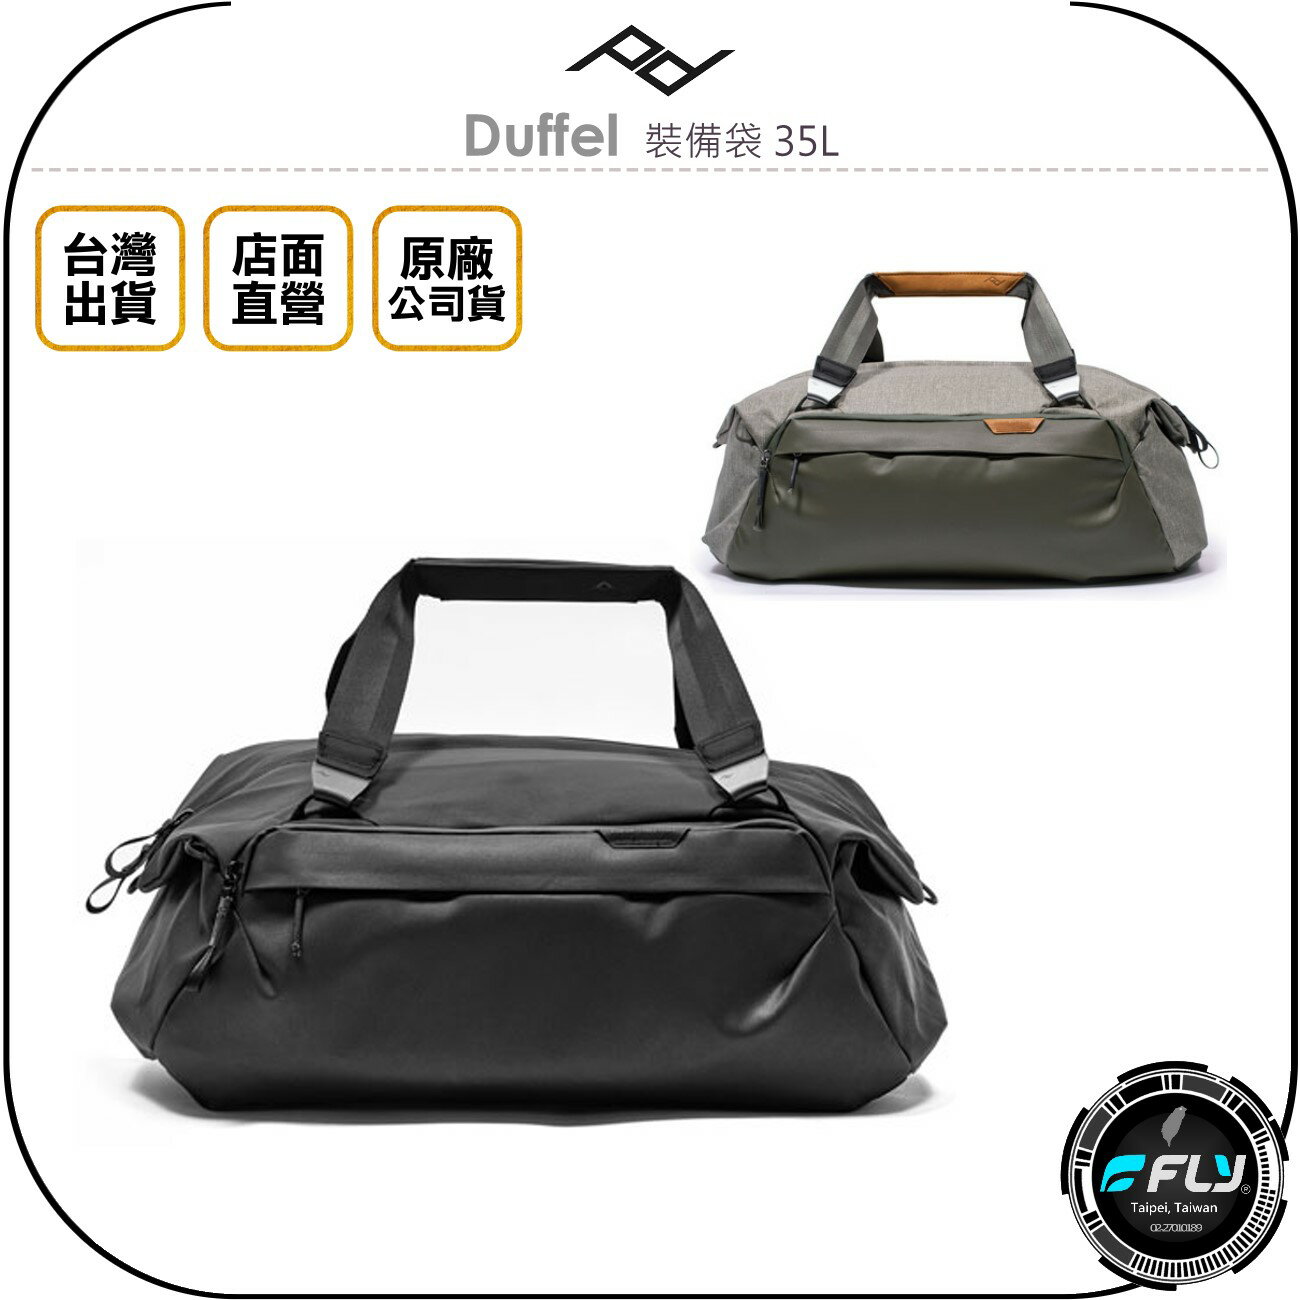 《飛翔無線3C》PEAK DESIGN Duffel 裝備袋 35L◉公司貨◉側背超大旅遊袋◉出遊整理收納包